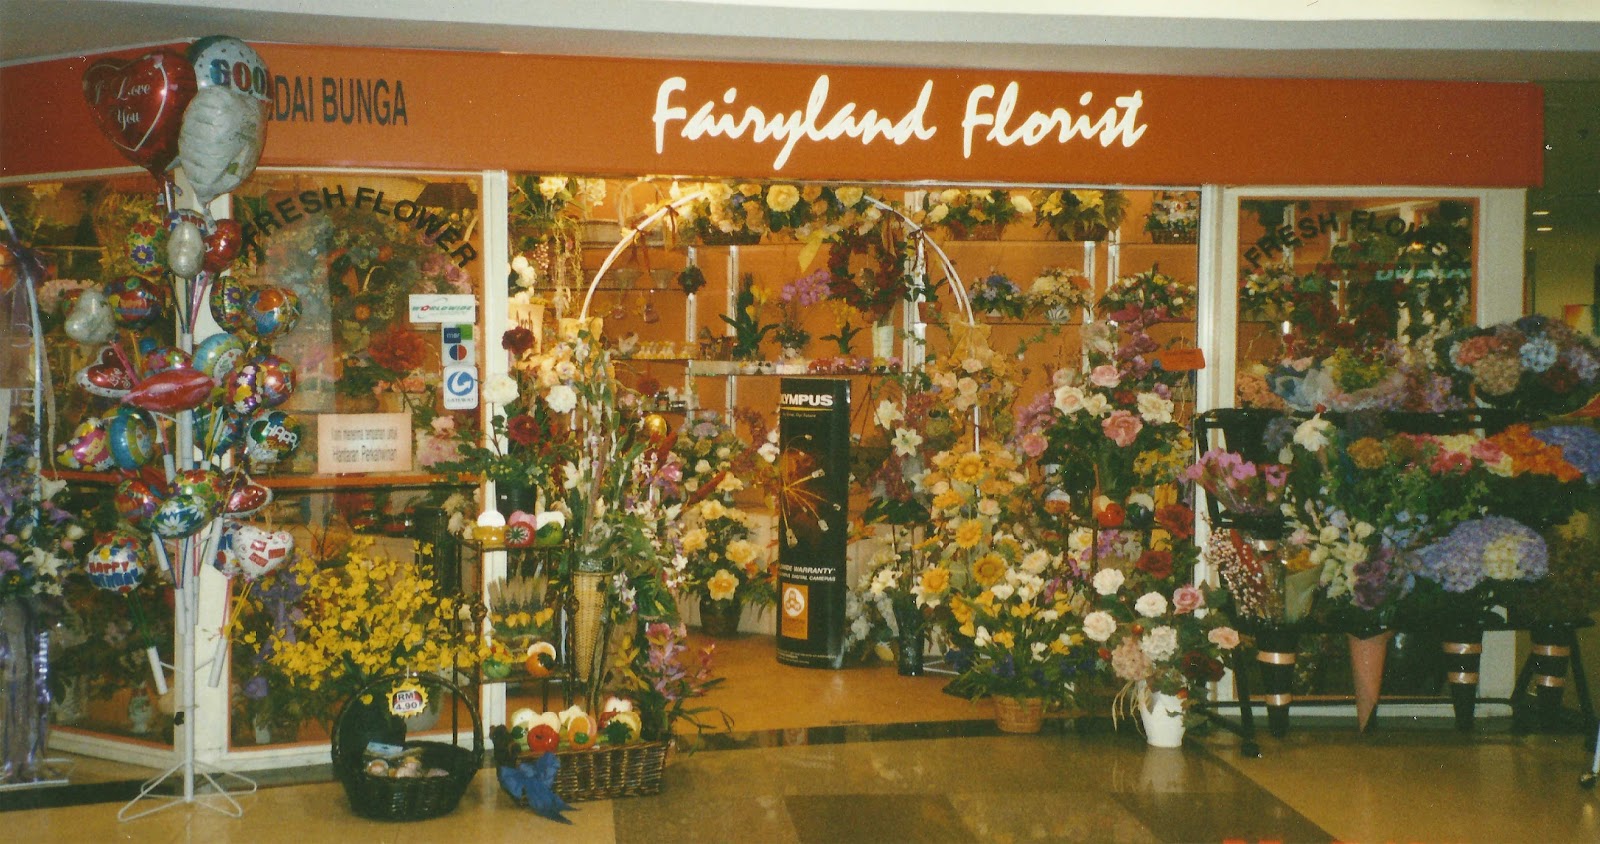 Fairyland Florist Kedai Bunga